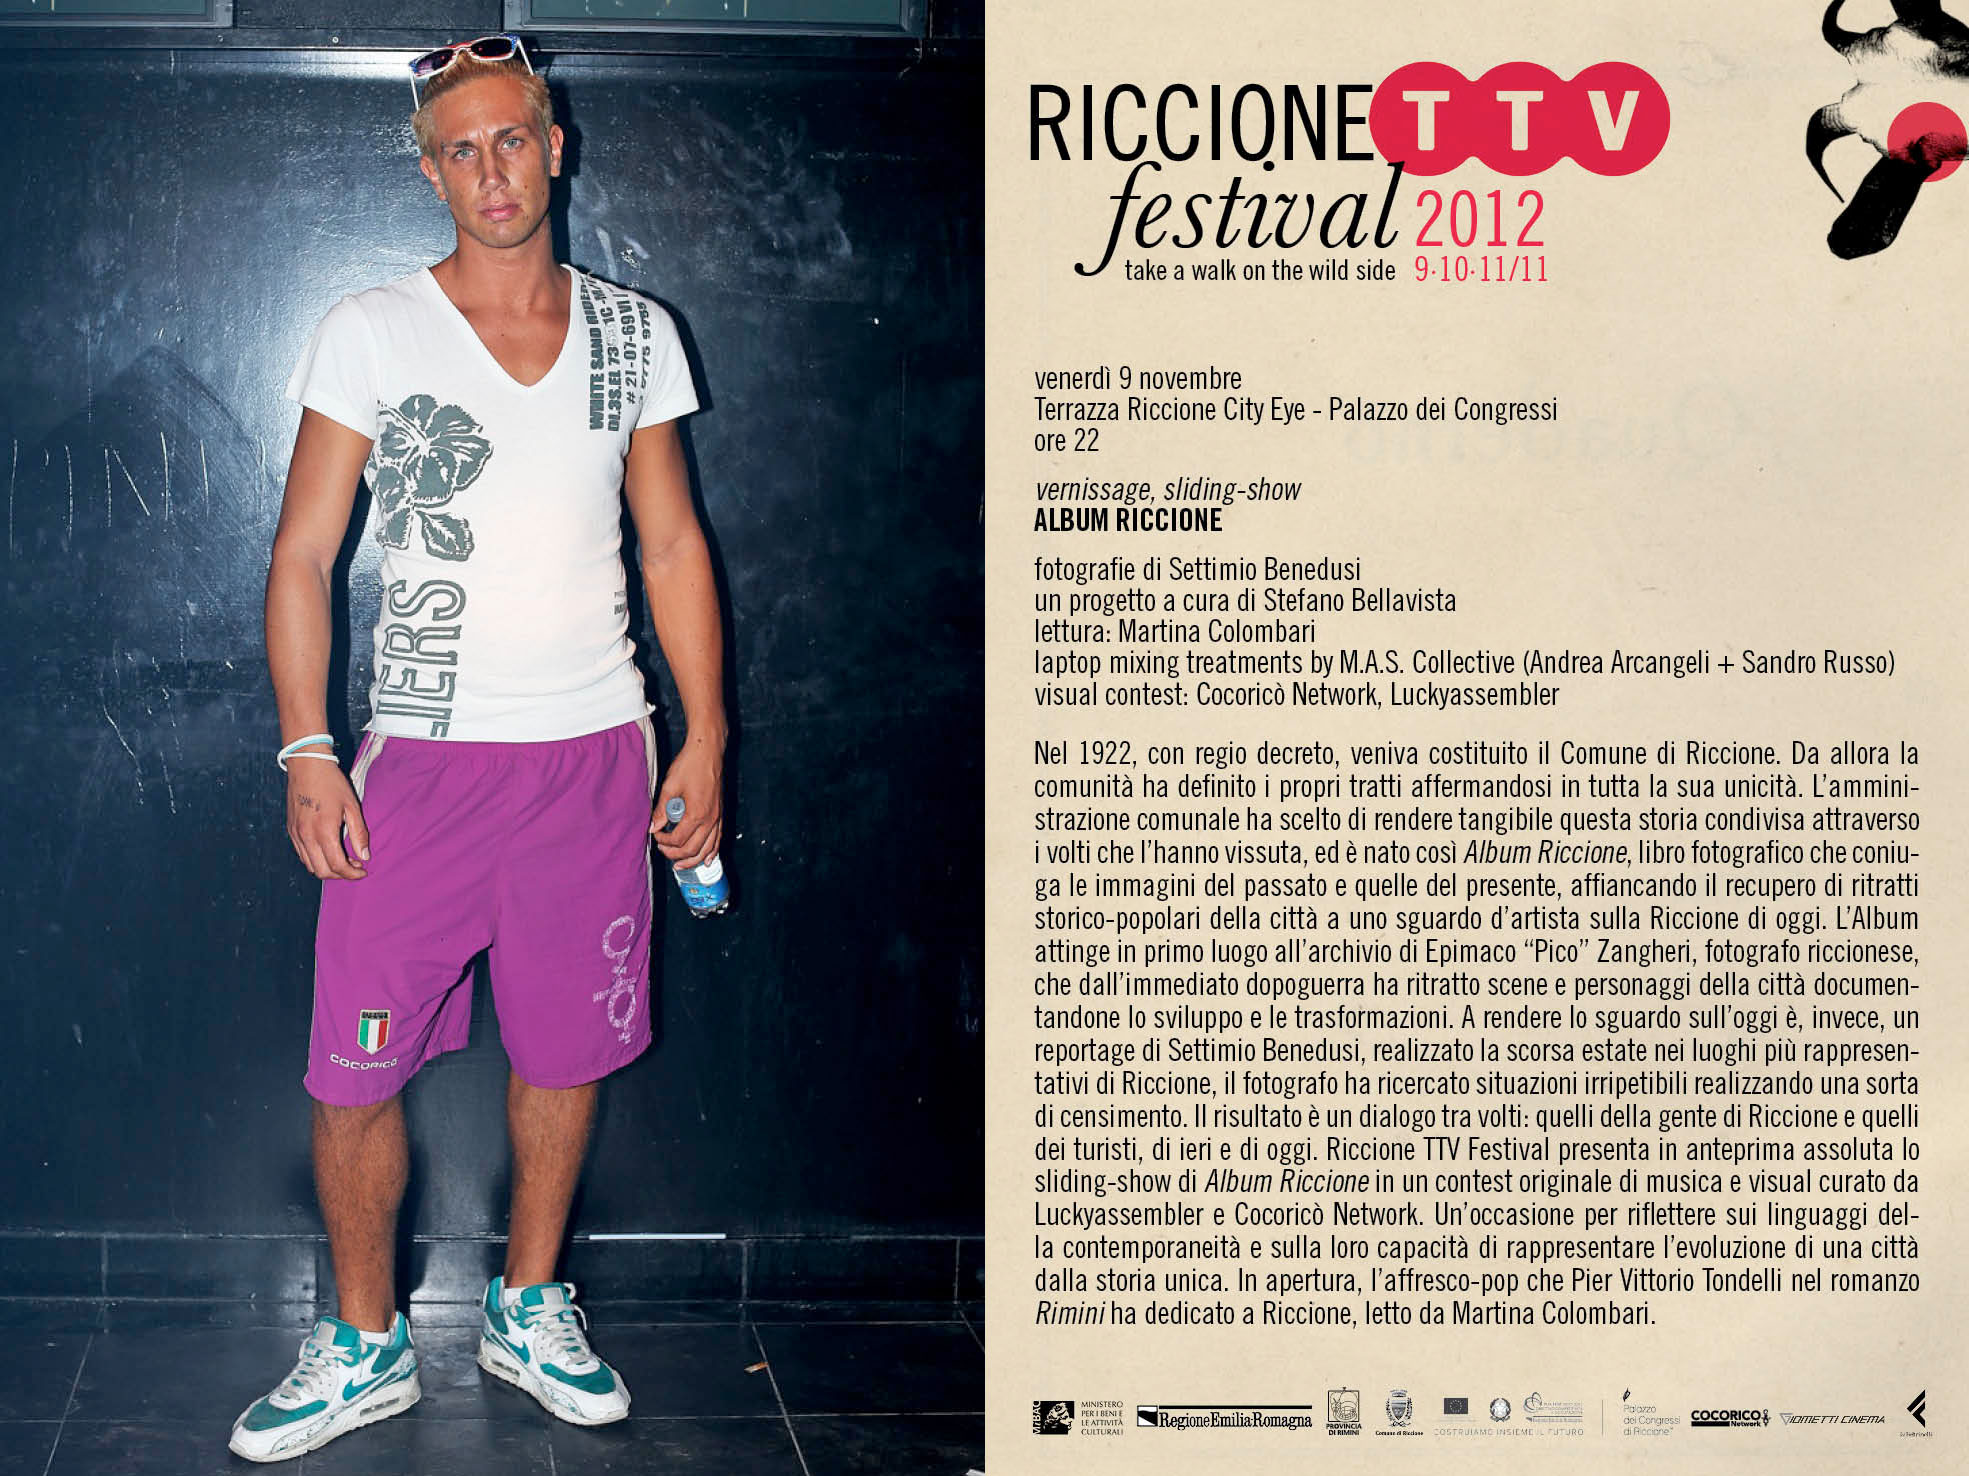 Riccione TTV festival 2012